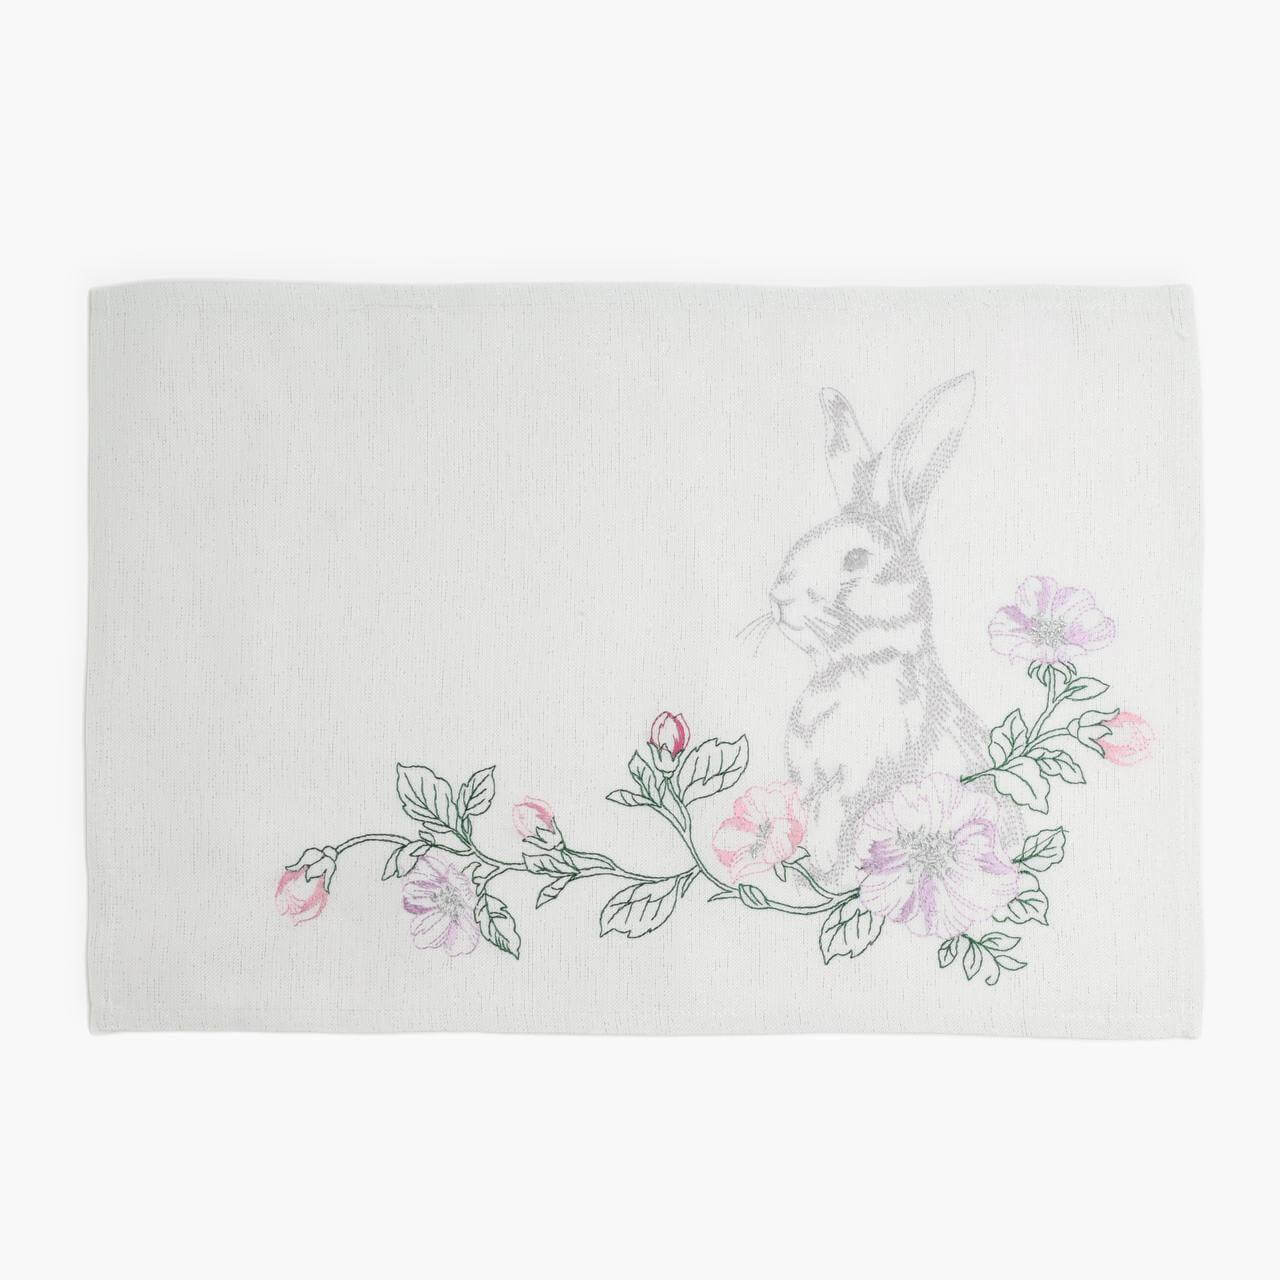 Салфетка под приборы, 30x45 см, полиэстер, прямоугольная, белая, Кролик в цветах, Pure Easter фланелевая салфетка главдор